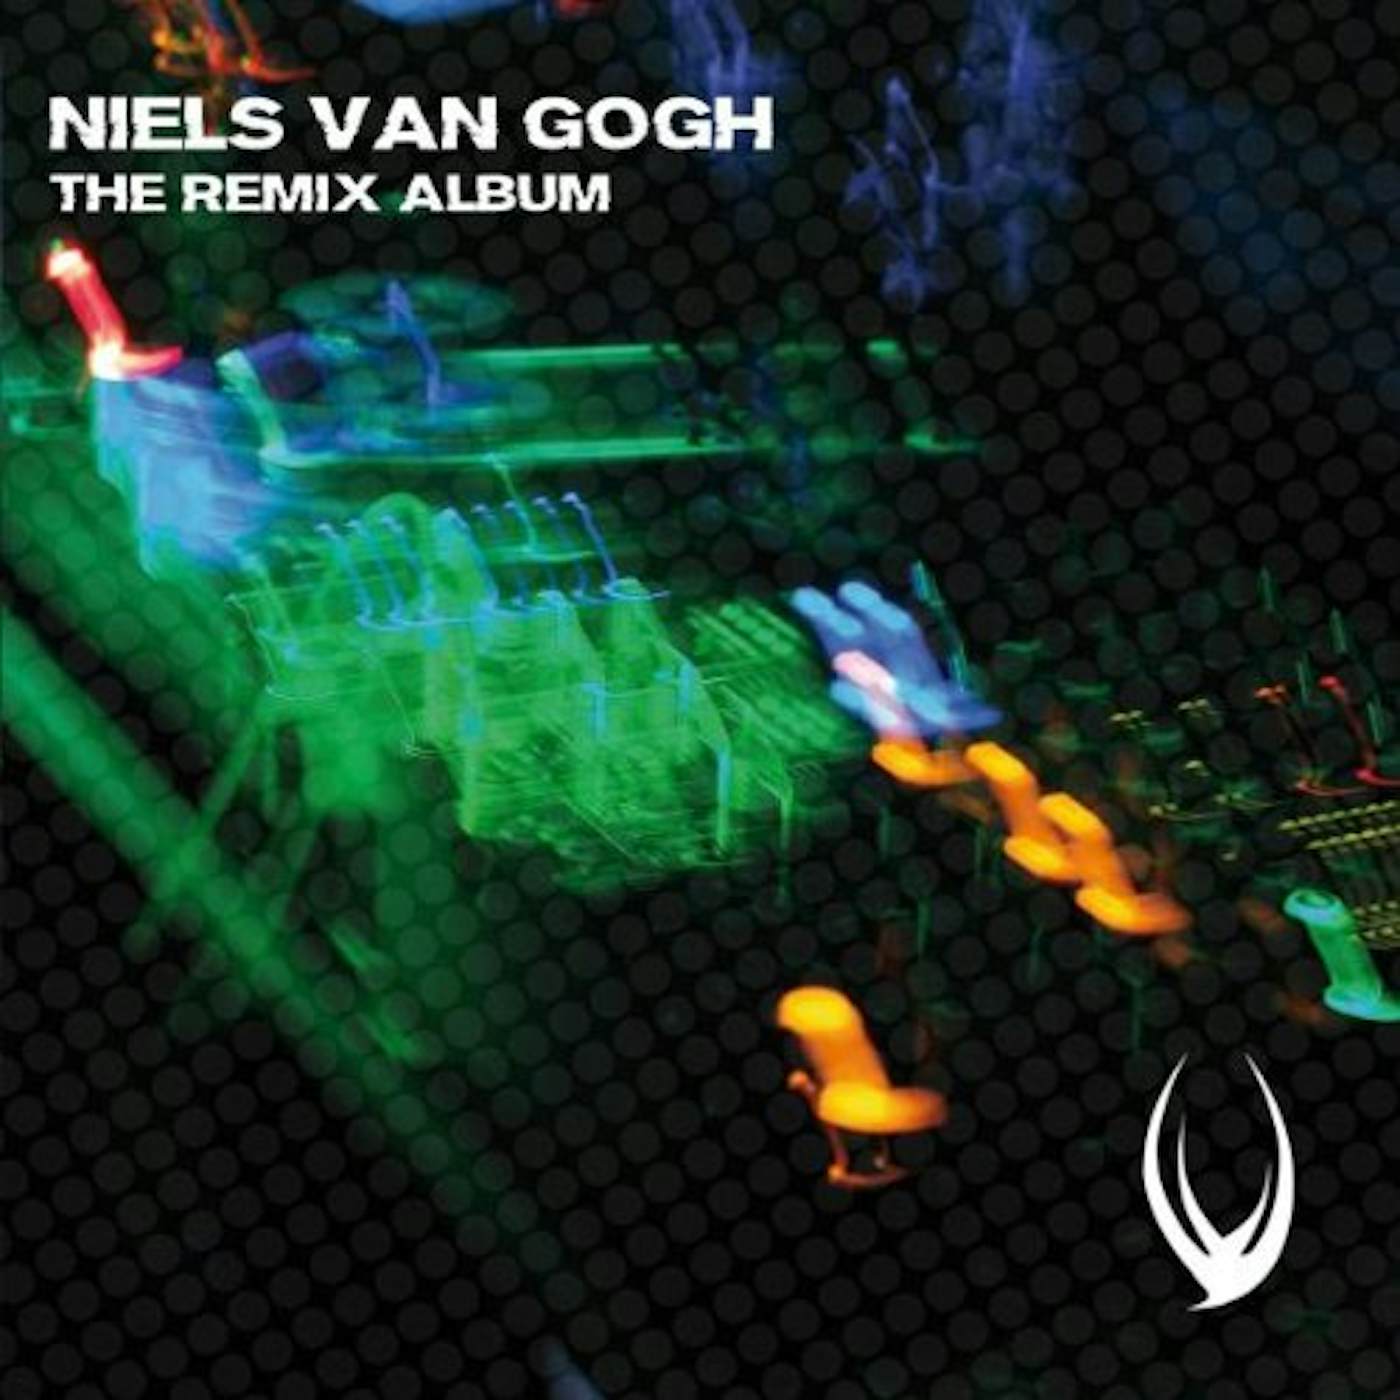 Niels Van Gogh REMIX ALBUM CD